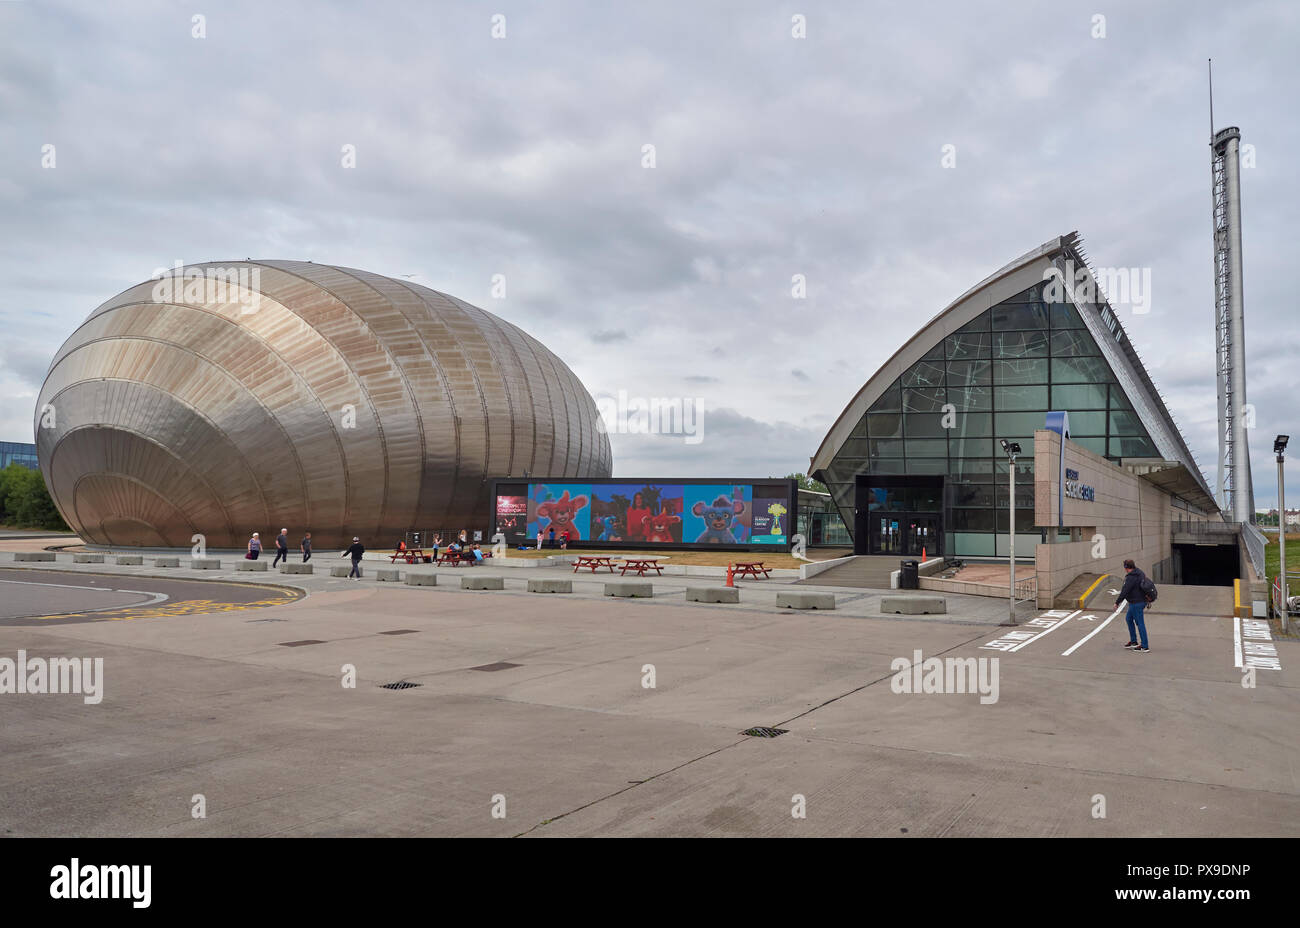 Le Glasgow Science Centre et cinéma IMAX sur Pacific Quay sur la rivière Clyde Waterfront à Glasgow, Écosse, Royaume-Uni Banque D'Images